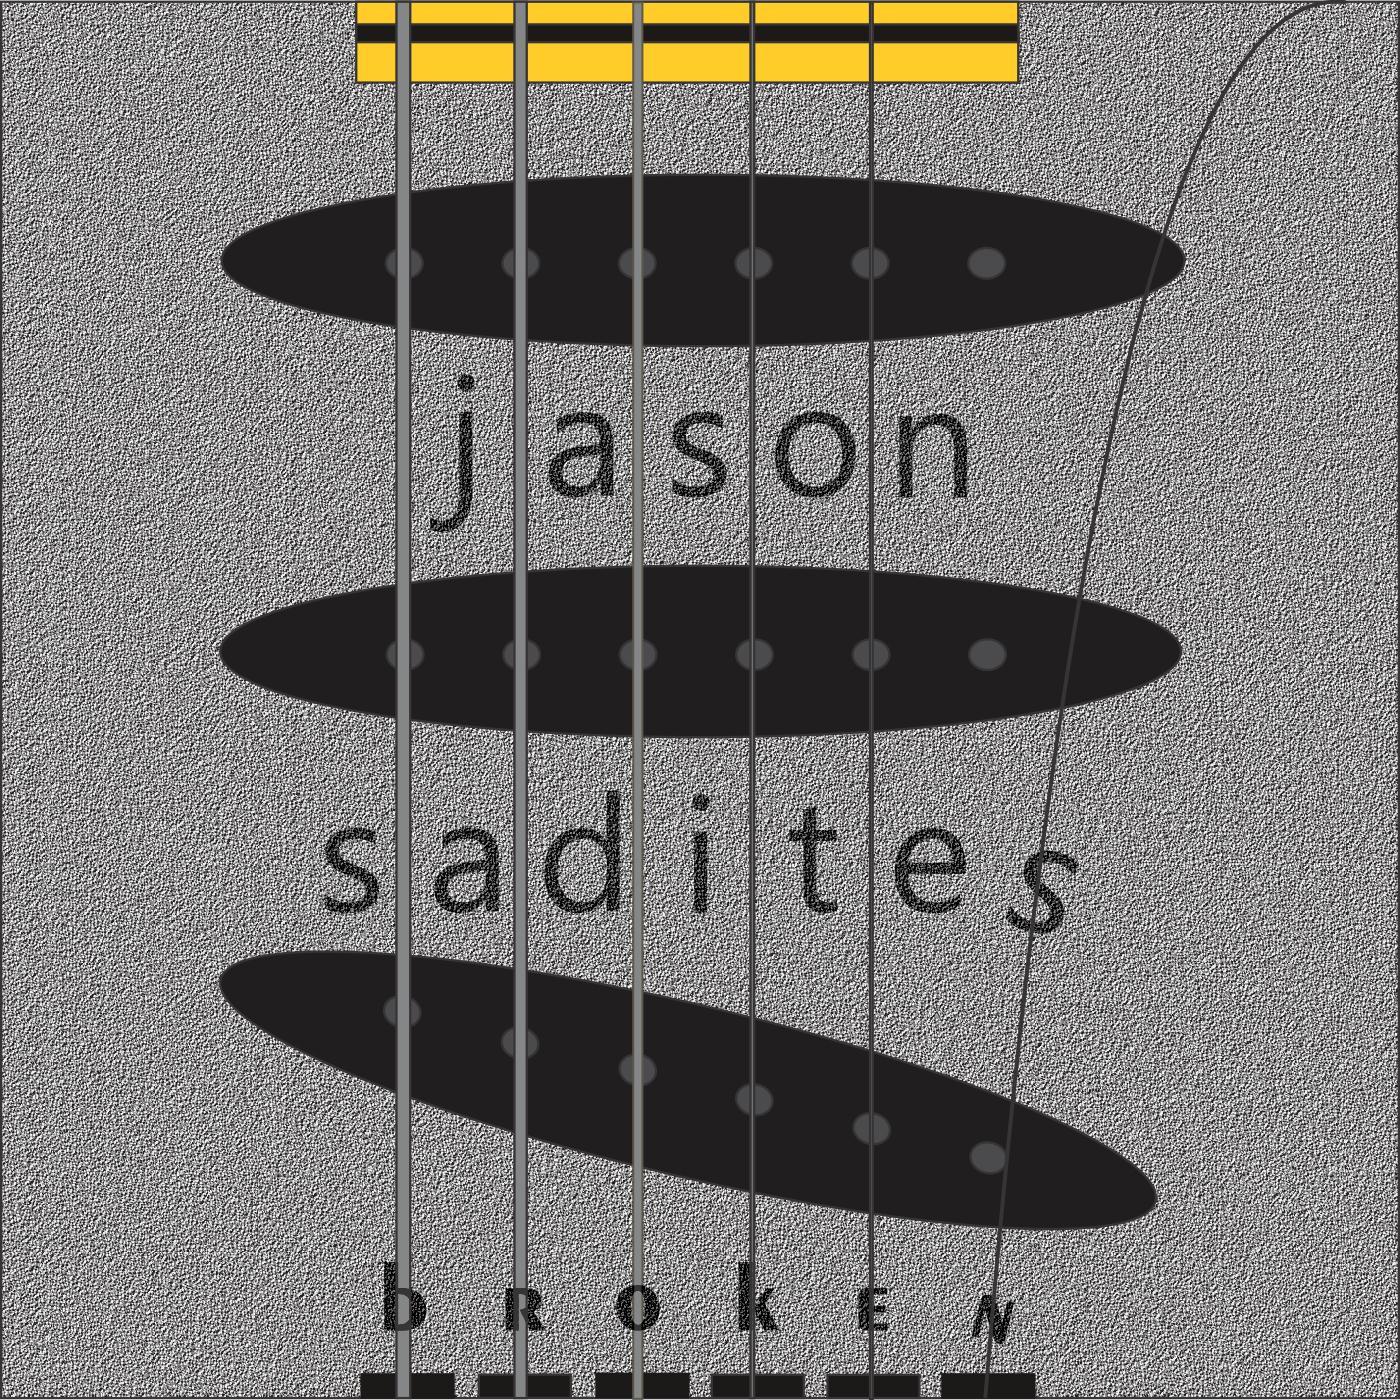 Jason Sadites - Straw Man